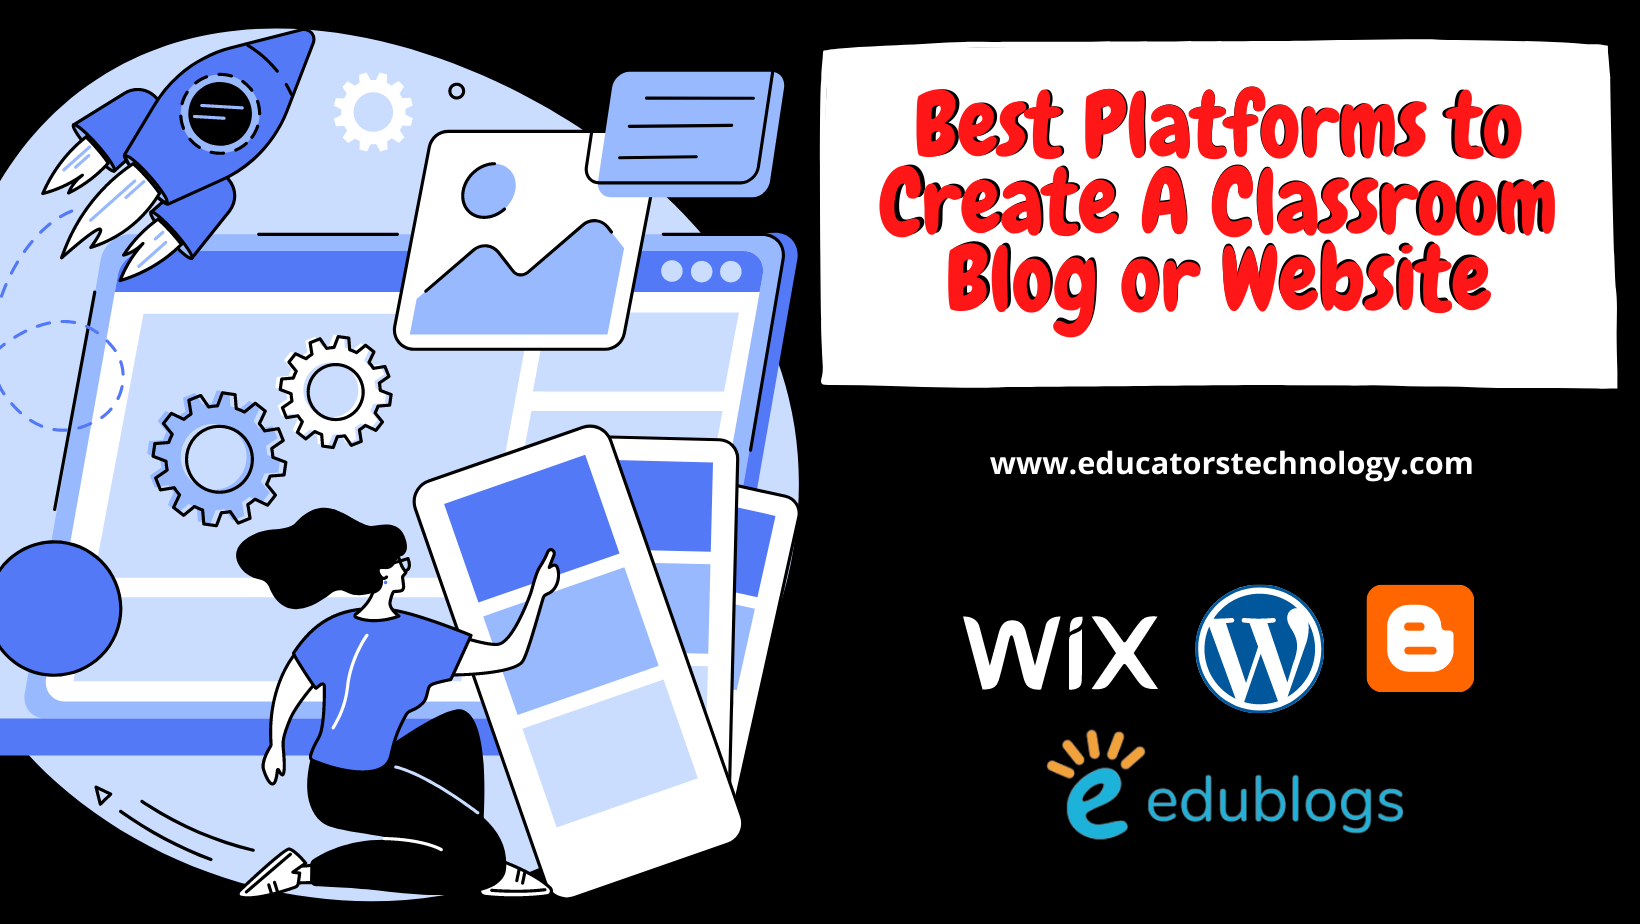 Una plataforma para crear blogs y sitios web en el aula.